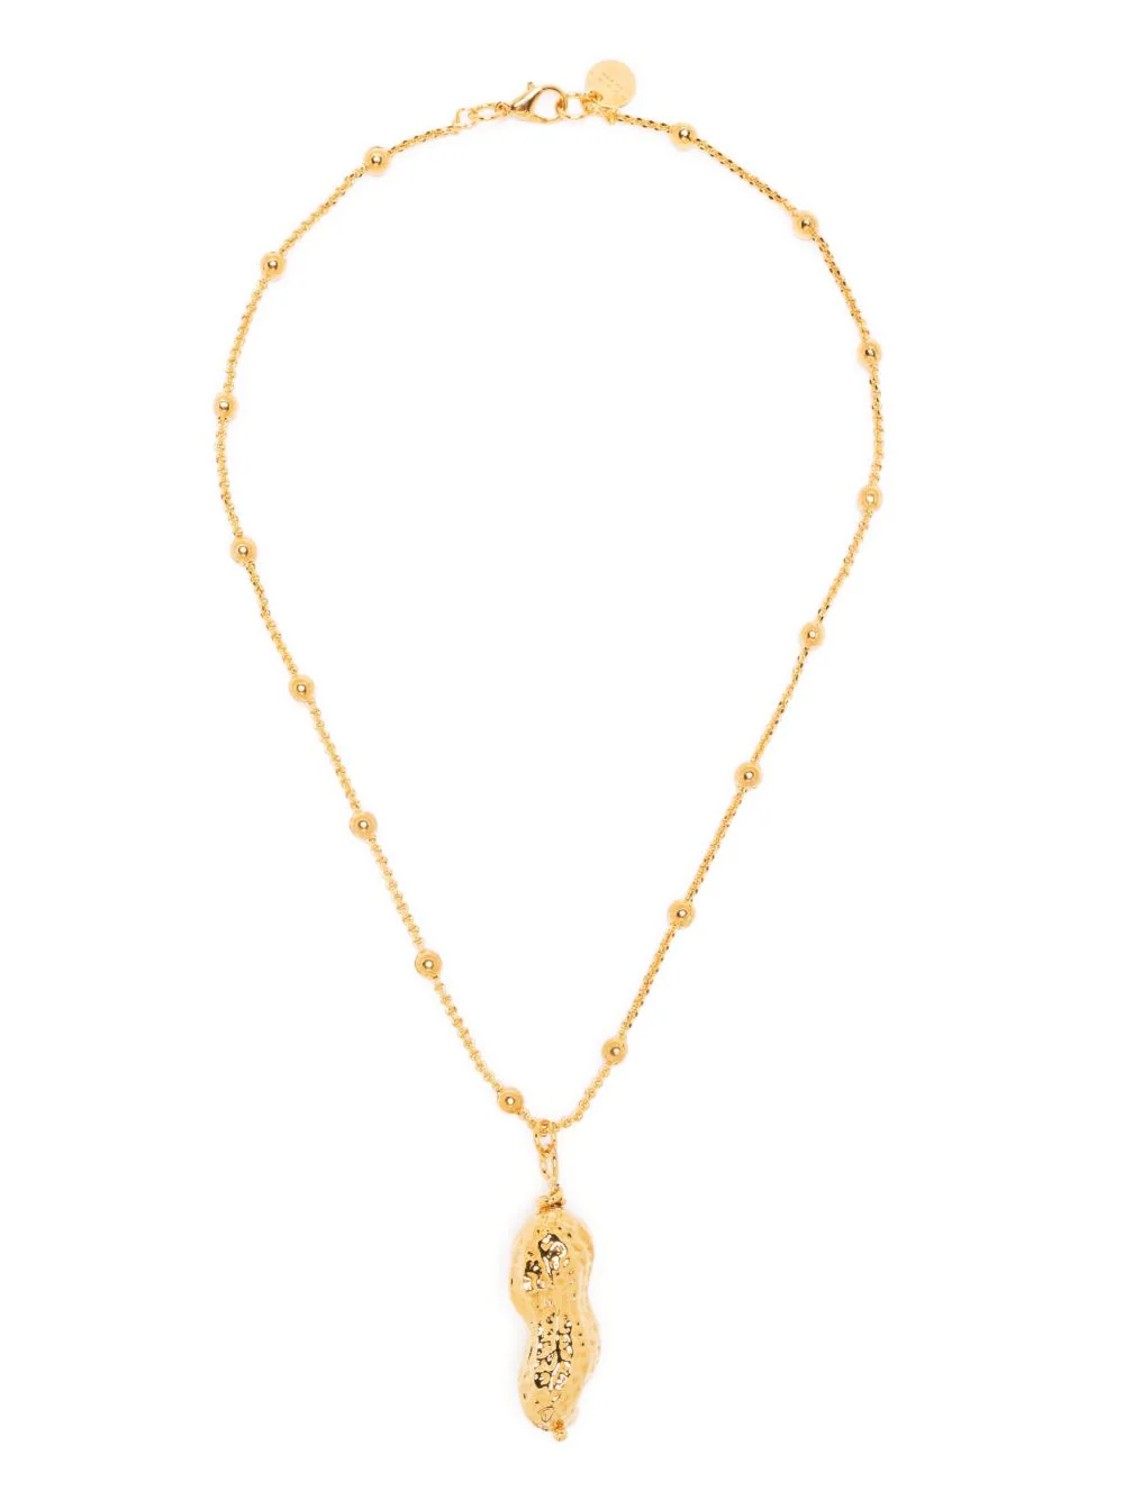 shop Marni  Bijoux: Bijoux Marni, collana, pendente, con nocciolina, in metallo dorato, media lunghezza.

Composizione: 100% metallo. number 2619